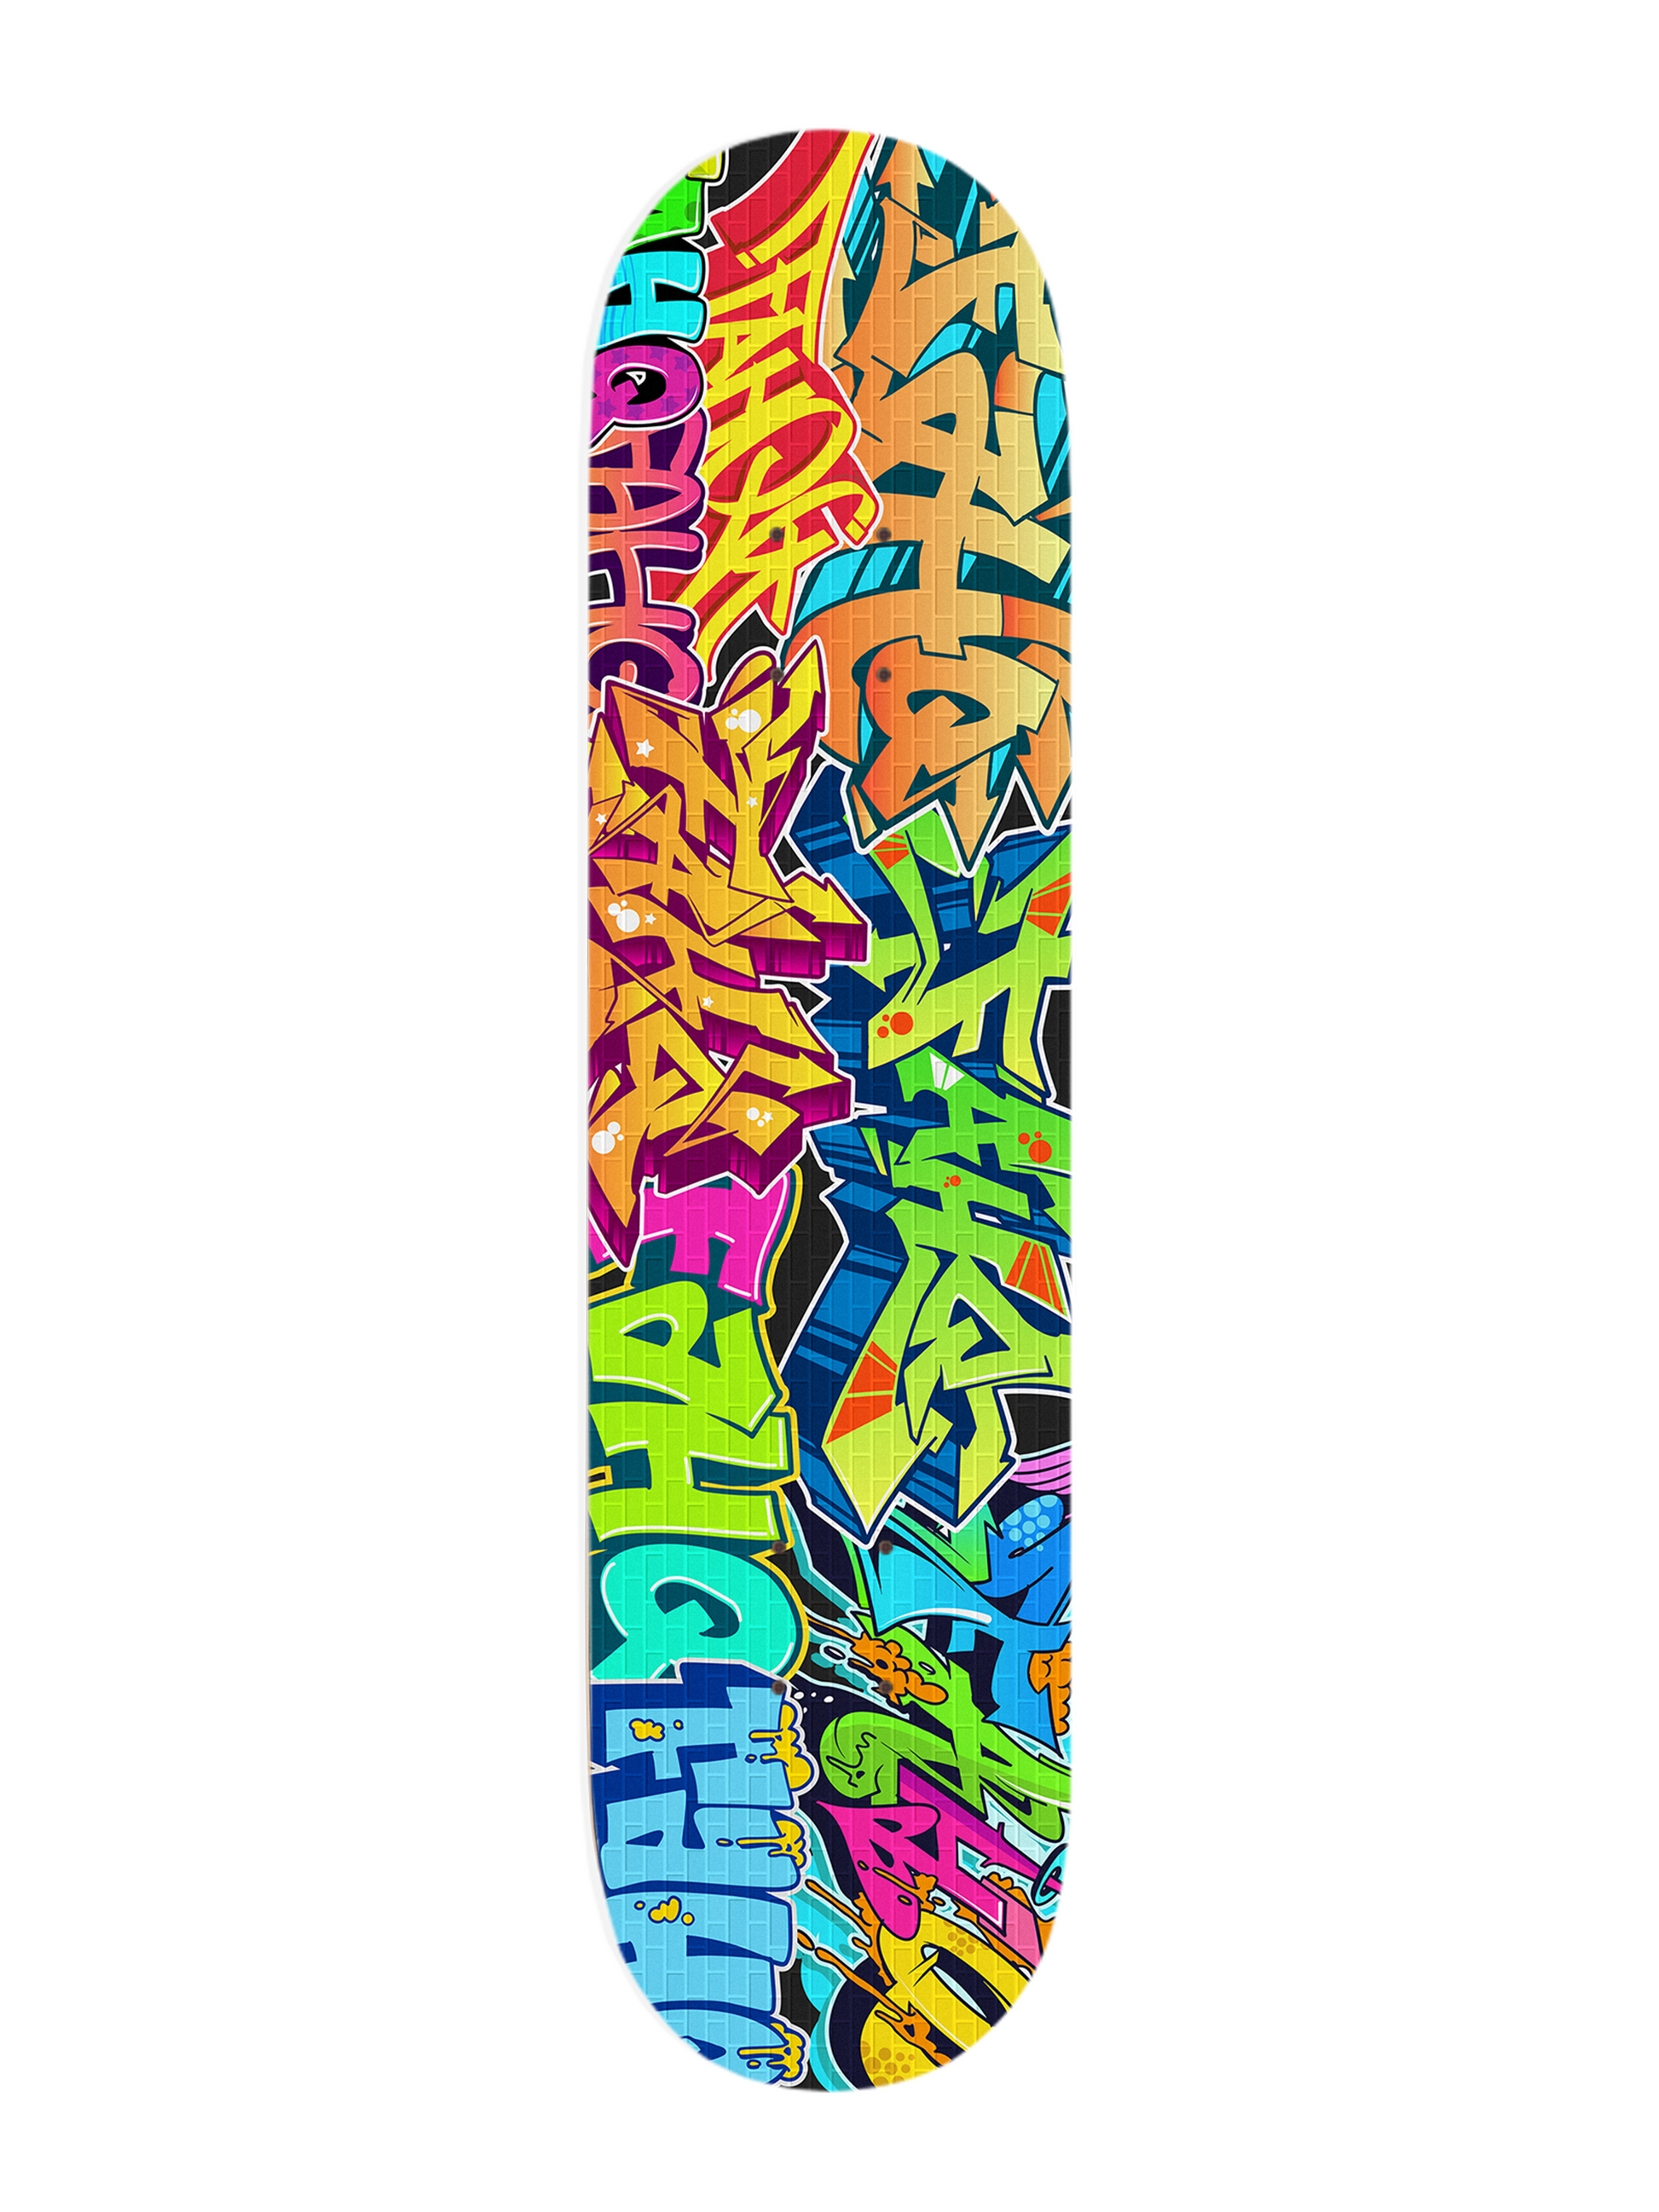 FAHQ Graffiti Wall Skateboard Deck